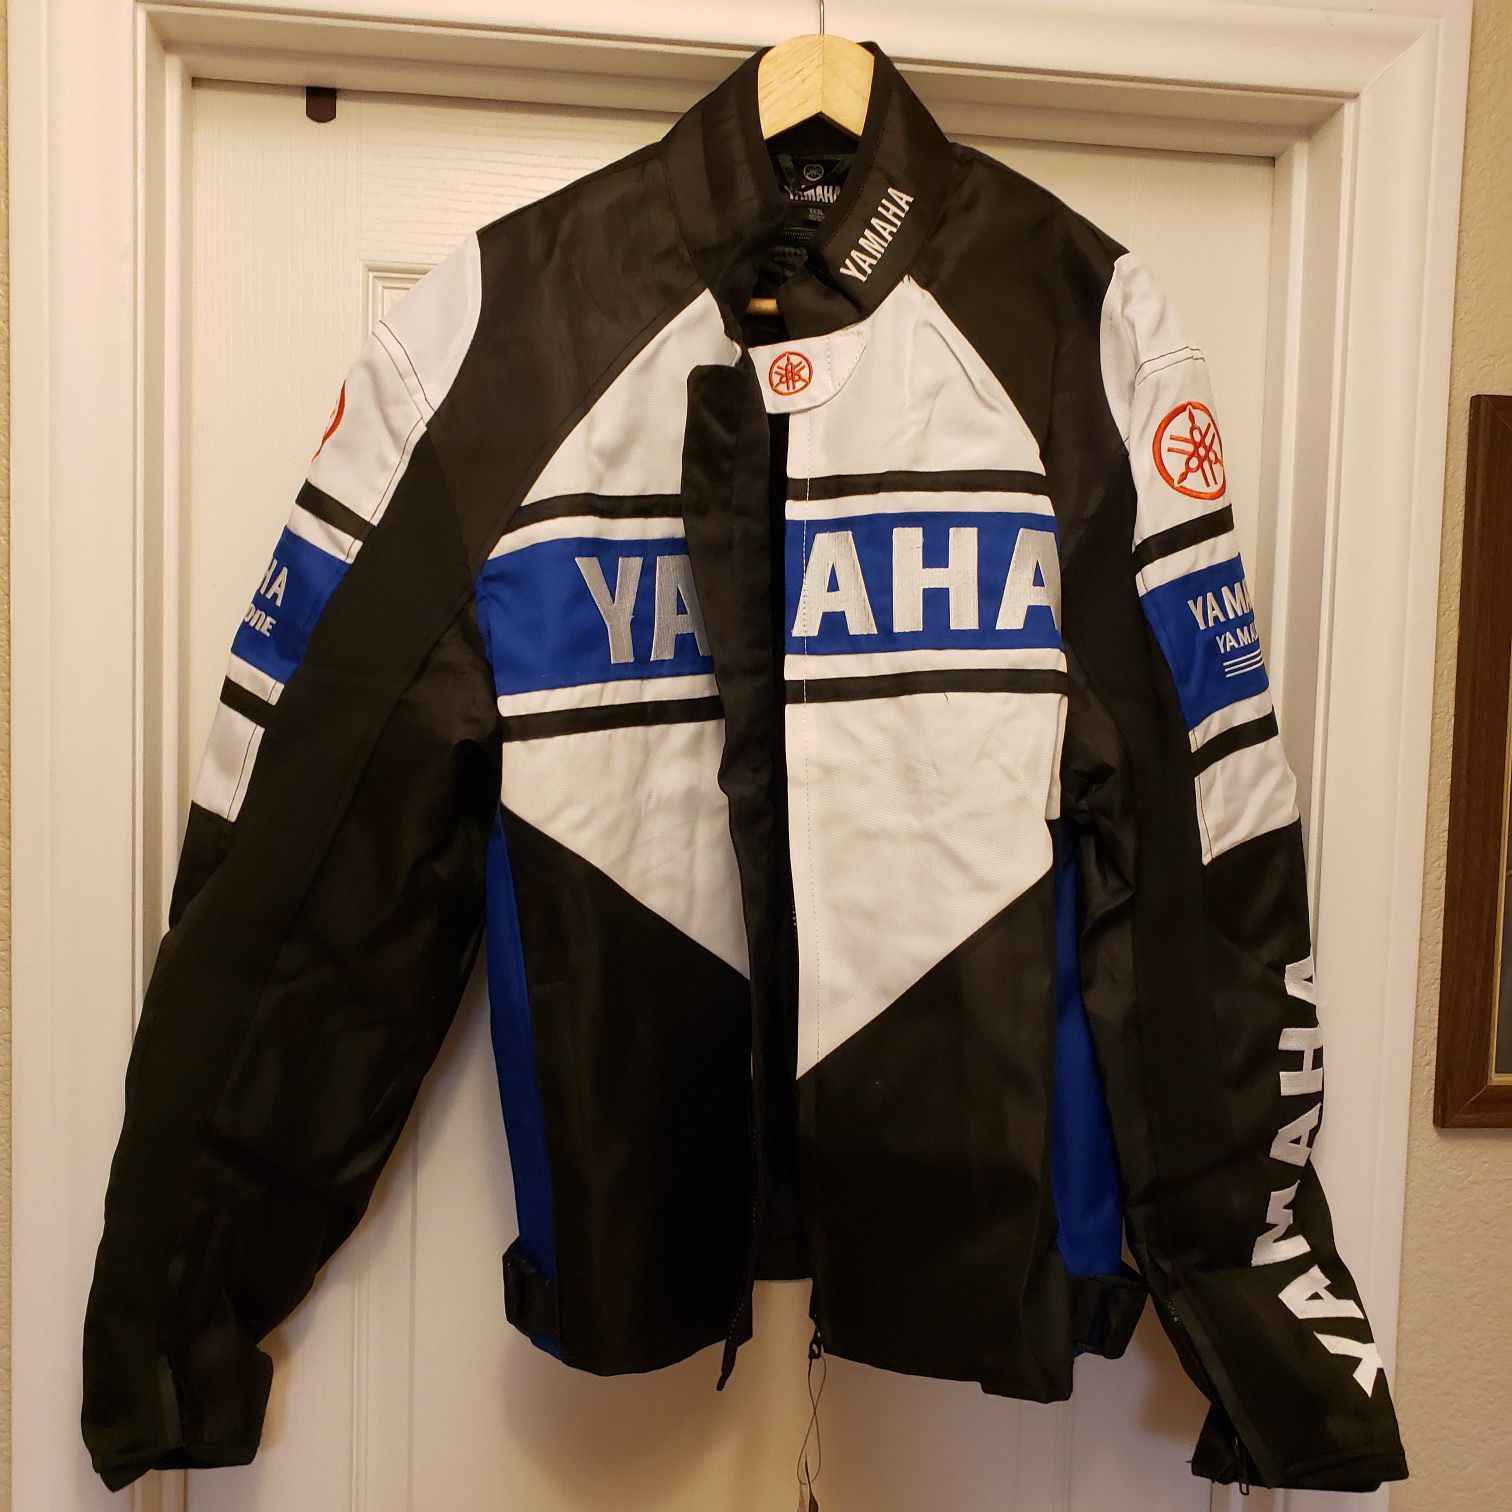 New Yamaha Motorcycle Jacket